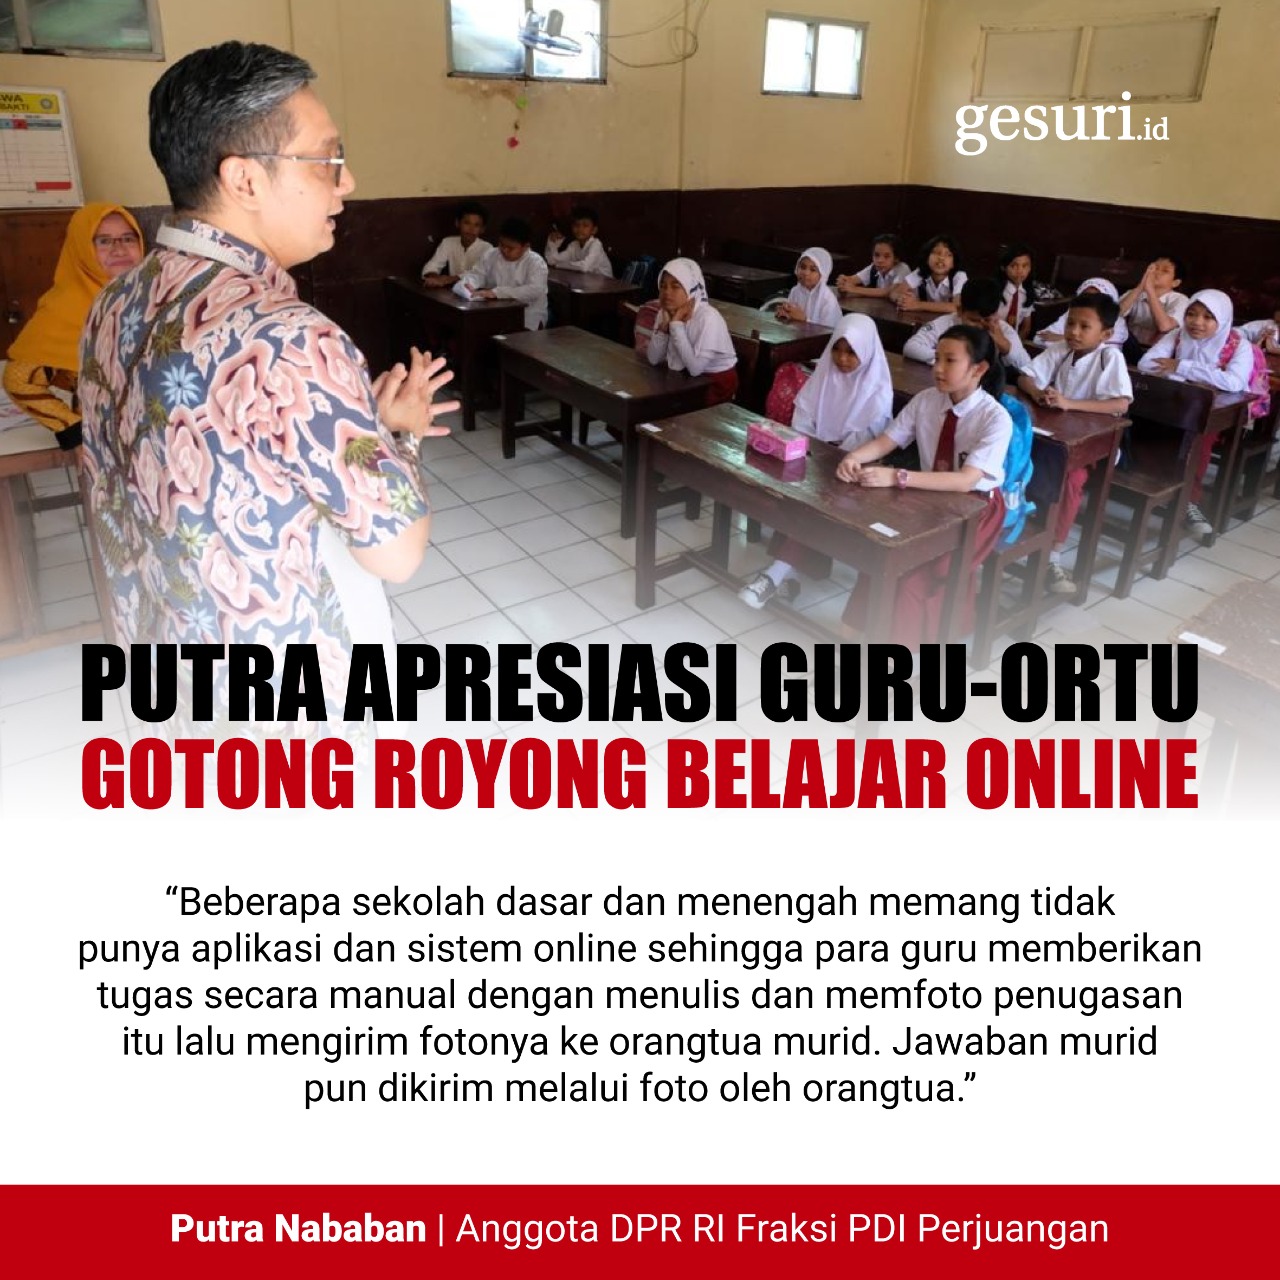 Putra Apresiasi Guru-Ortu di Jaktim Gotong Royong Belajar Online